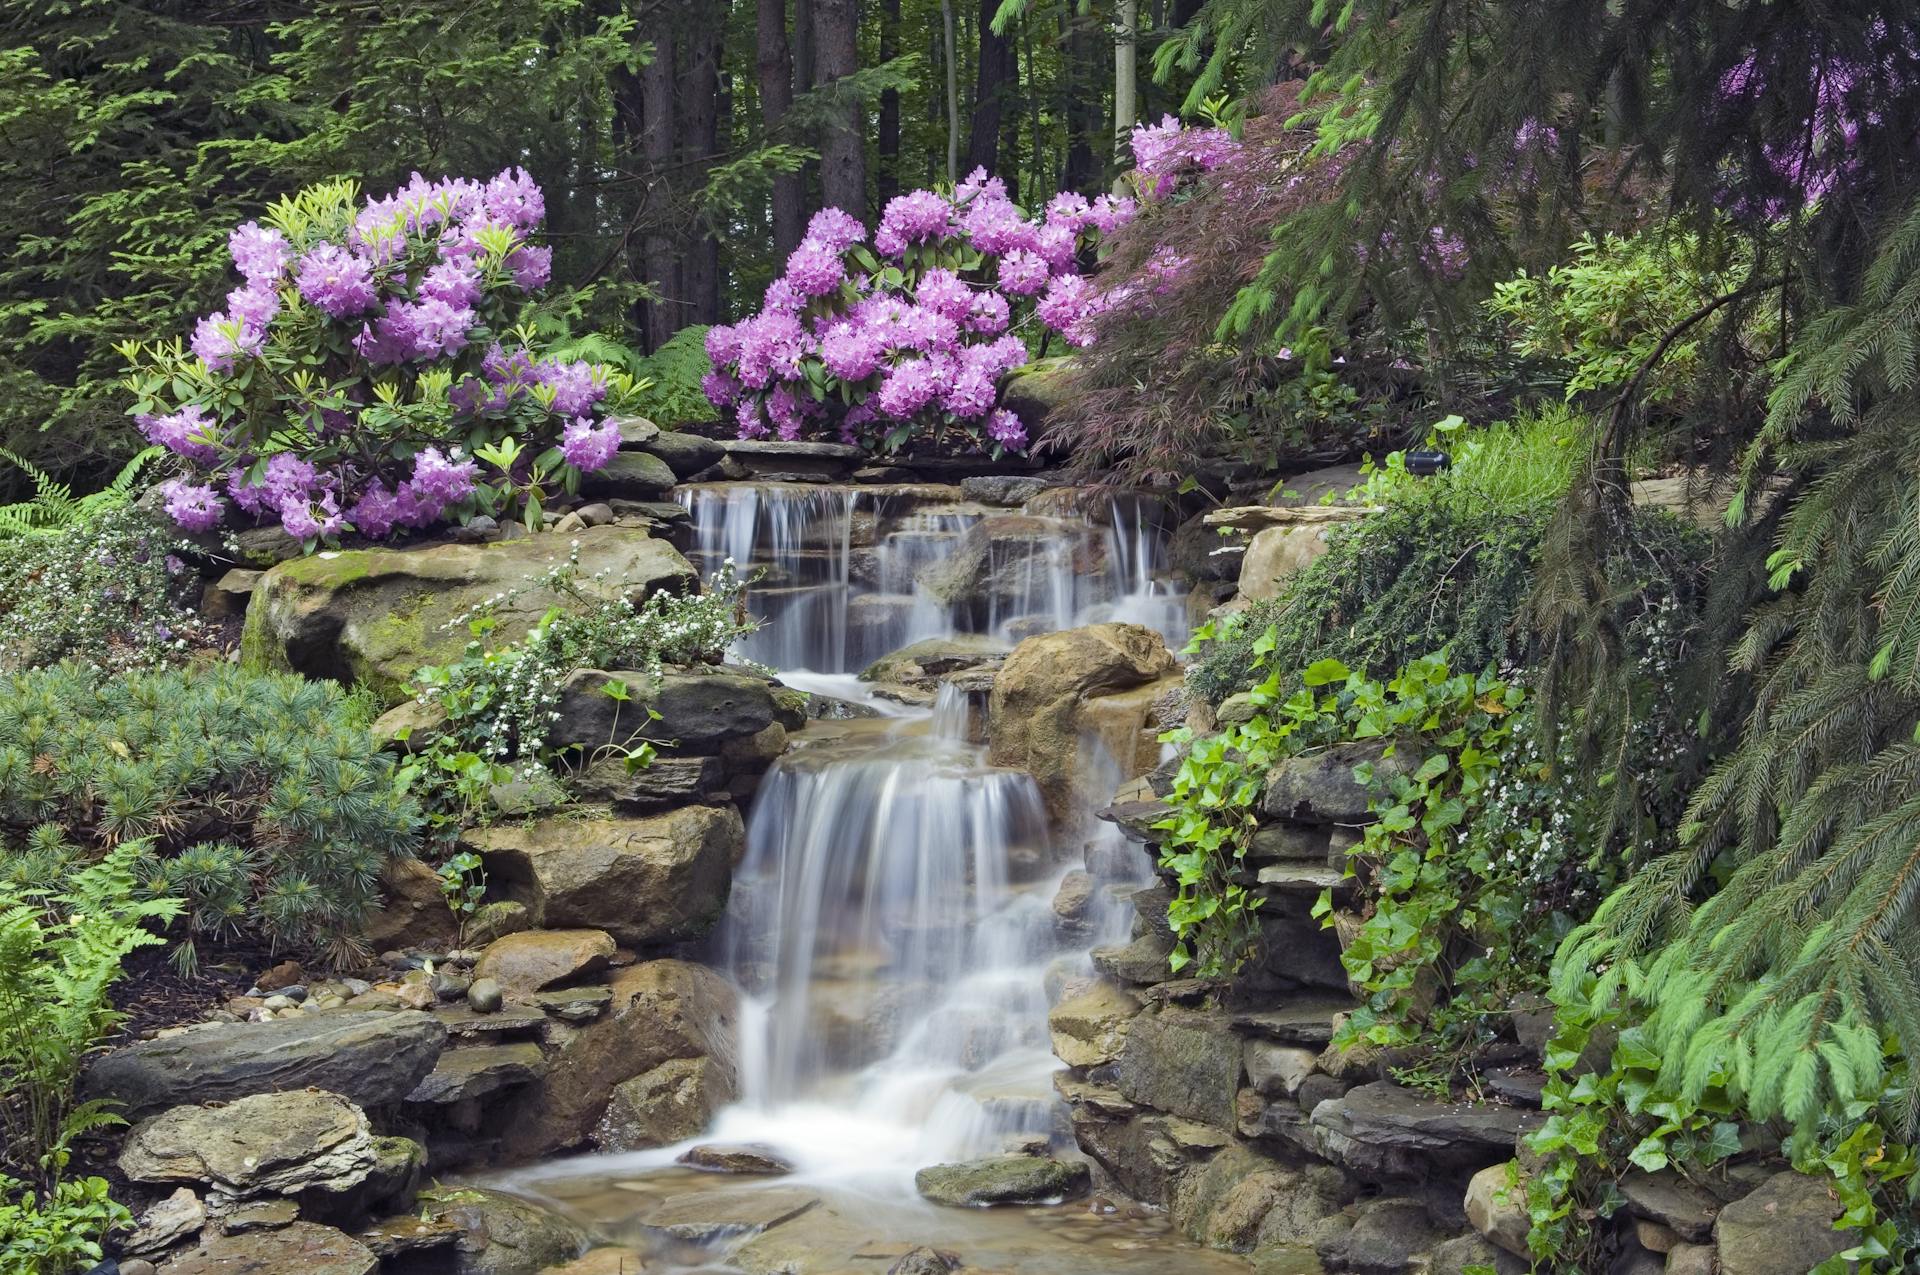 Waterfall in a garden